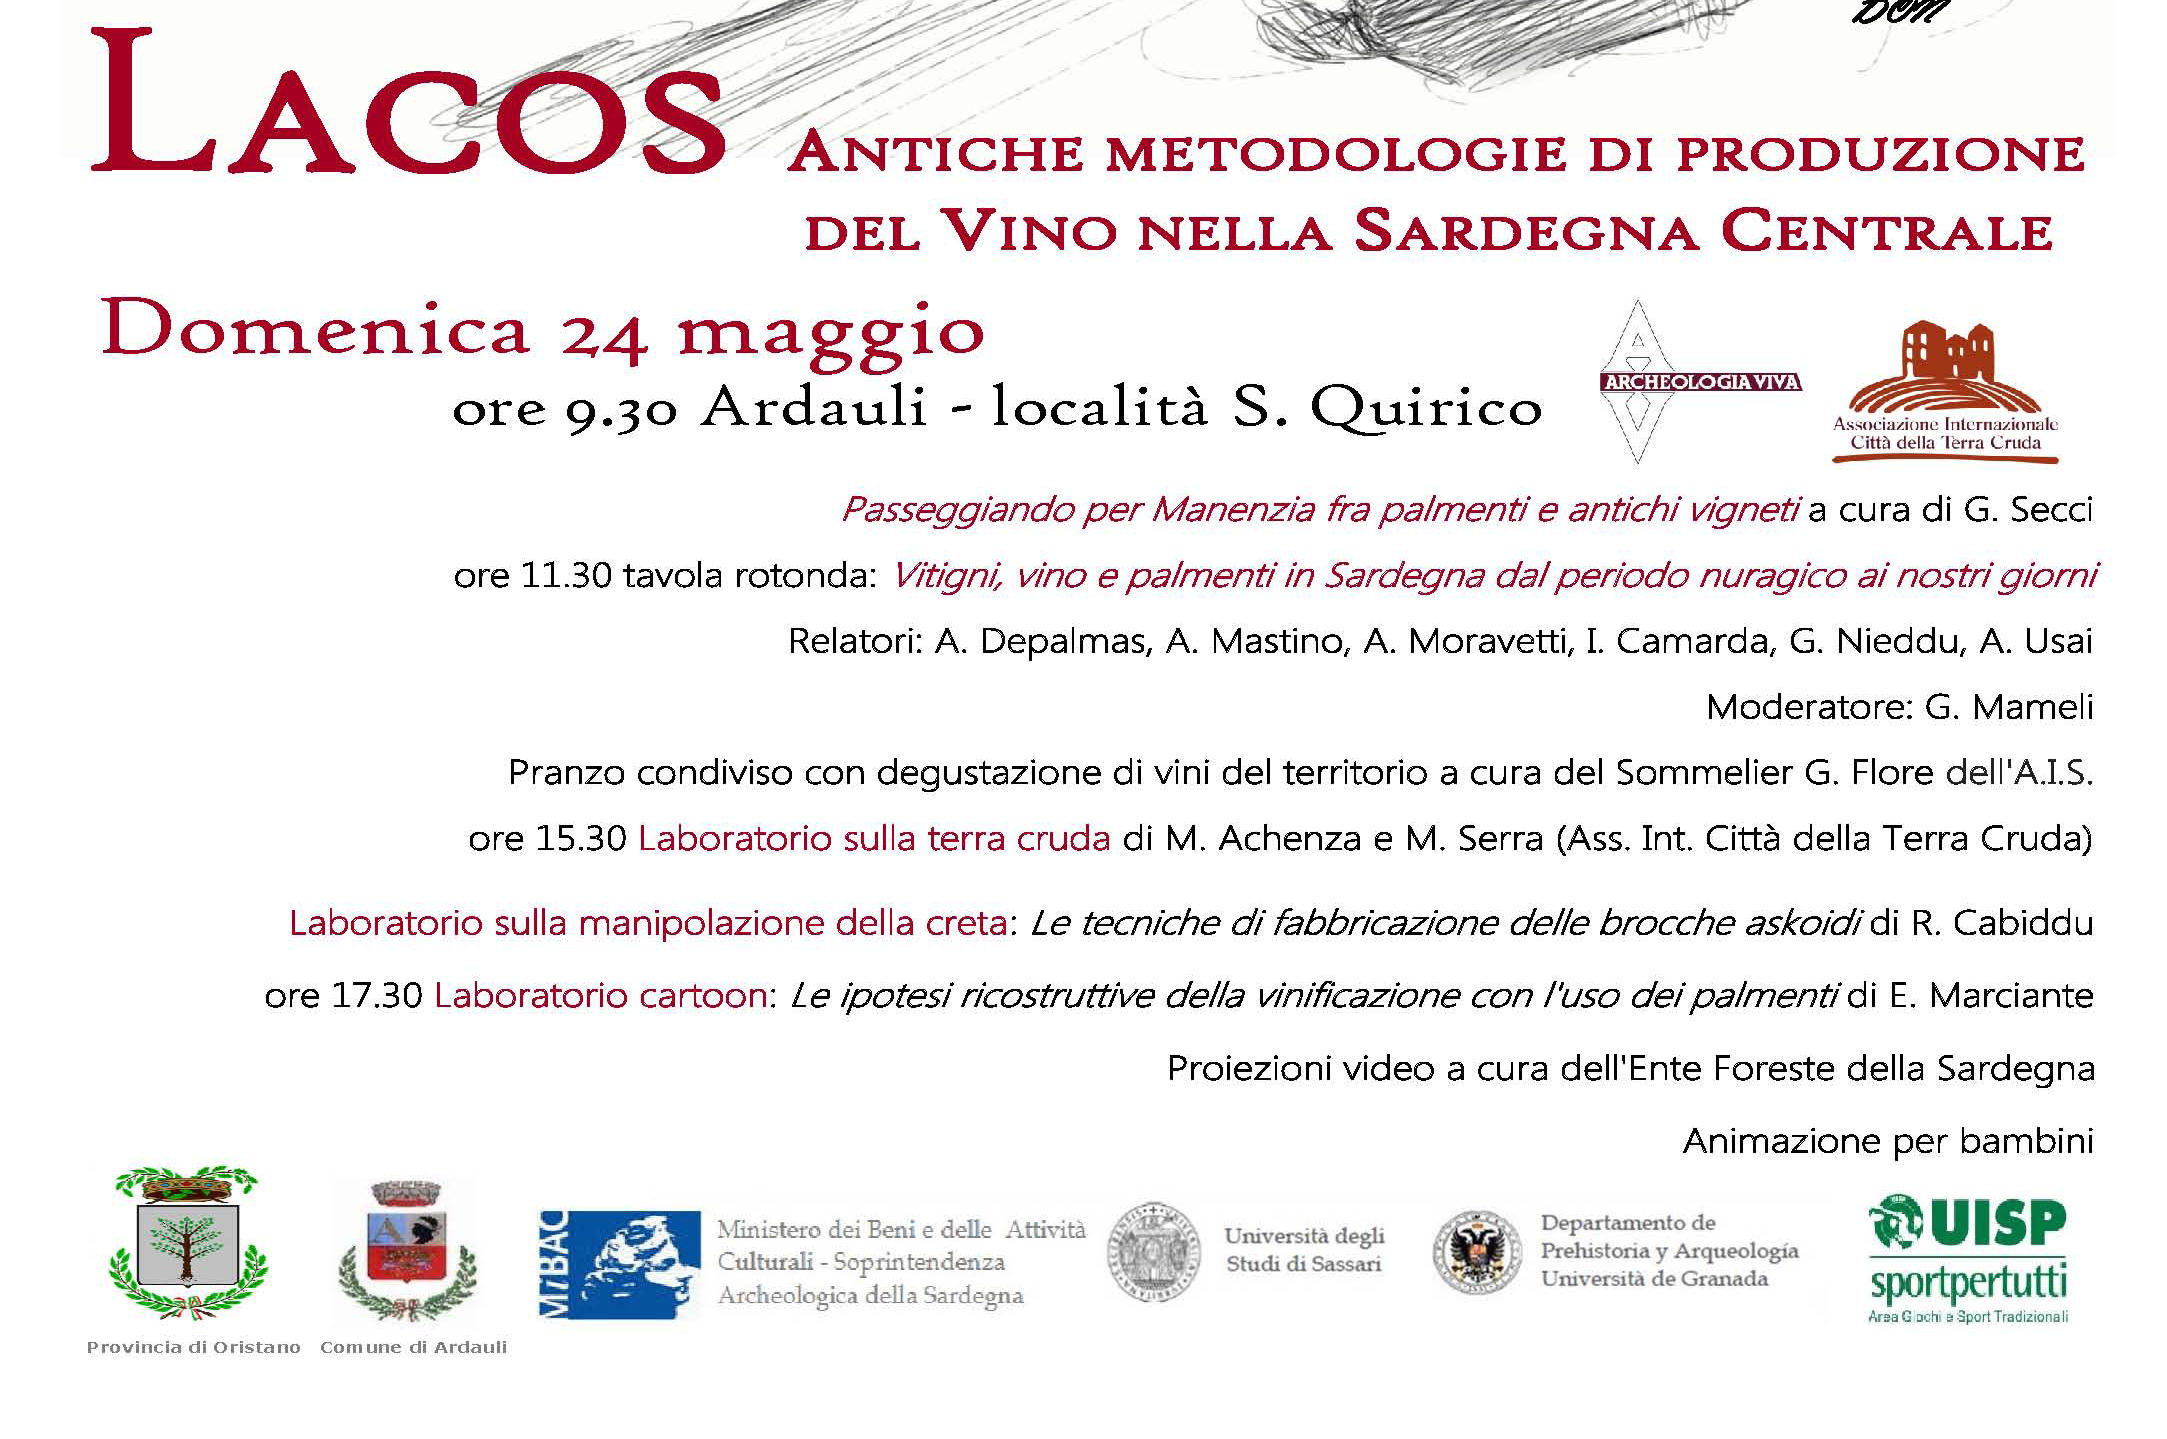 Lacos Archeosperimentare in Sardegna programma